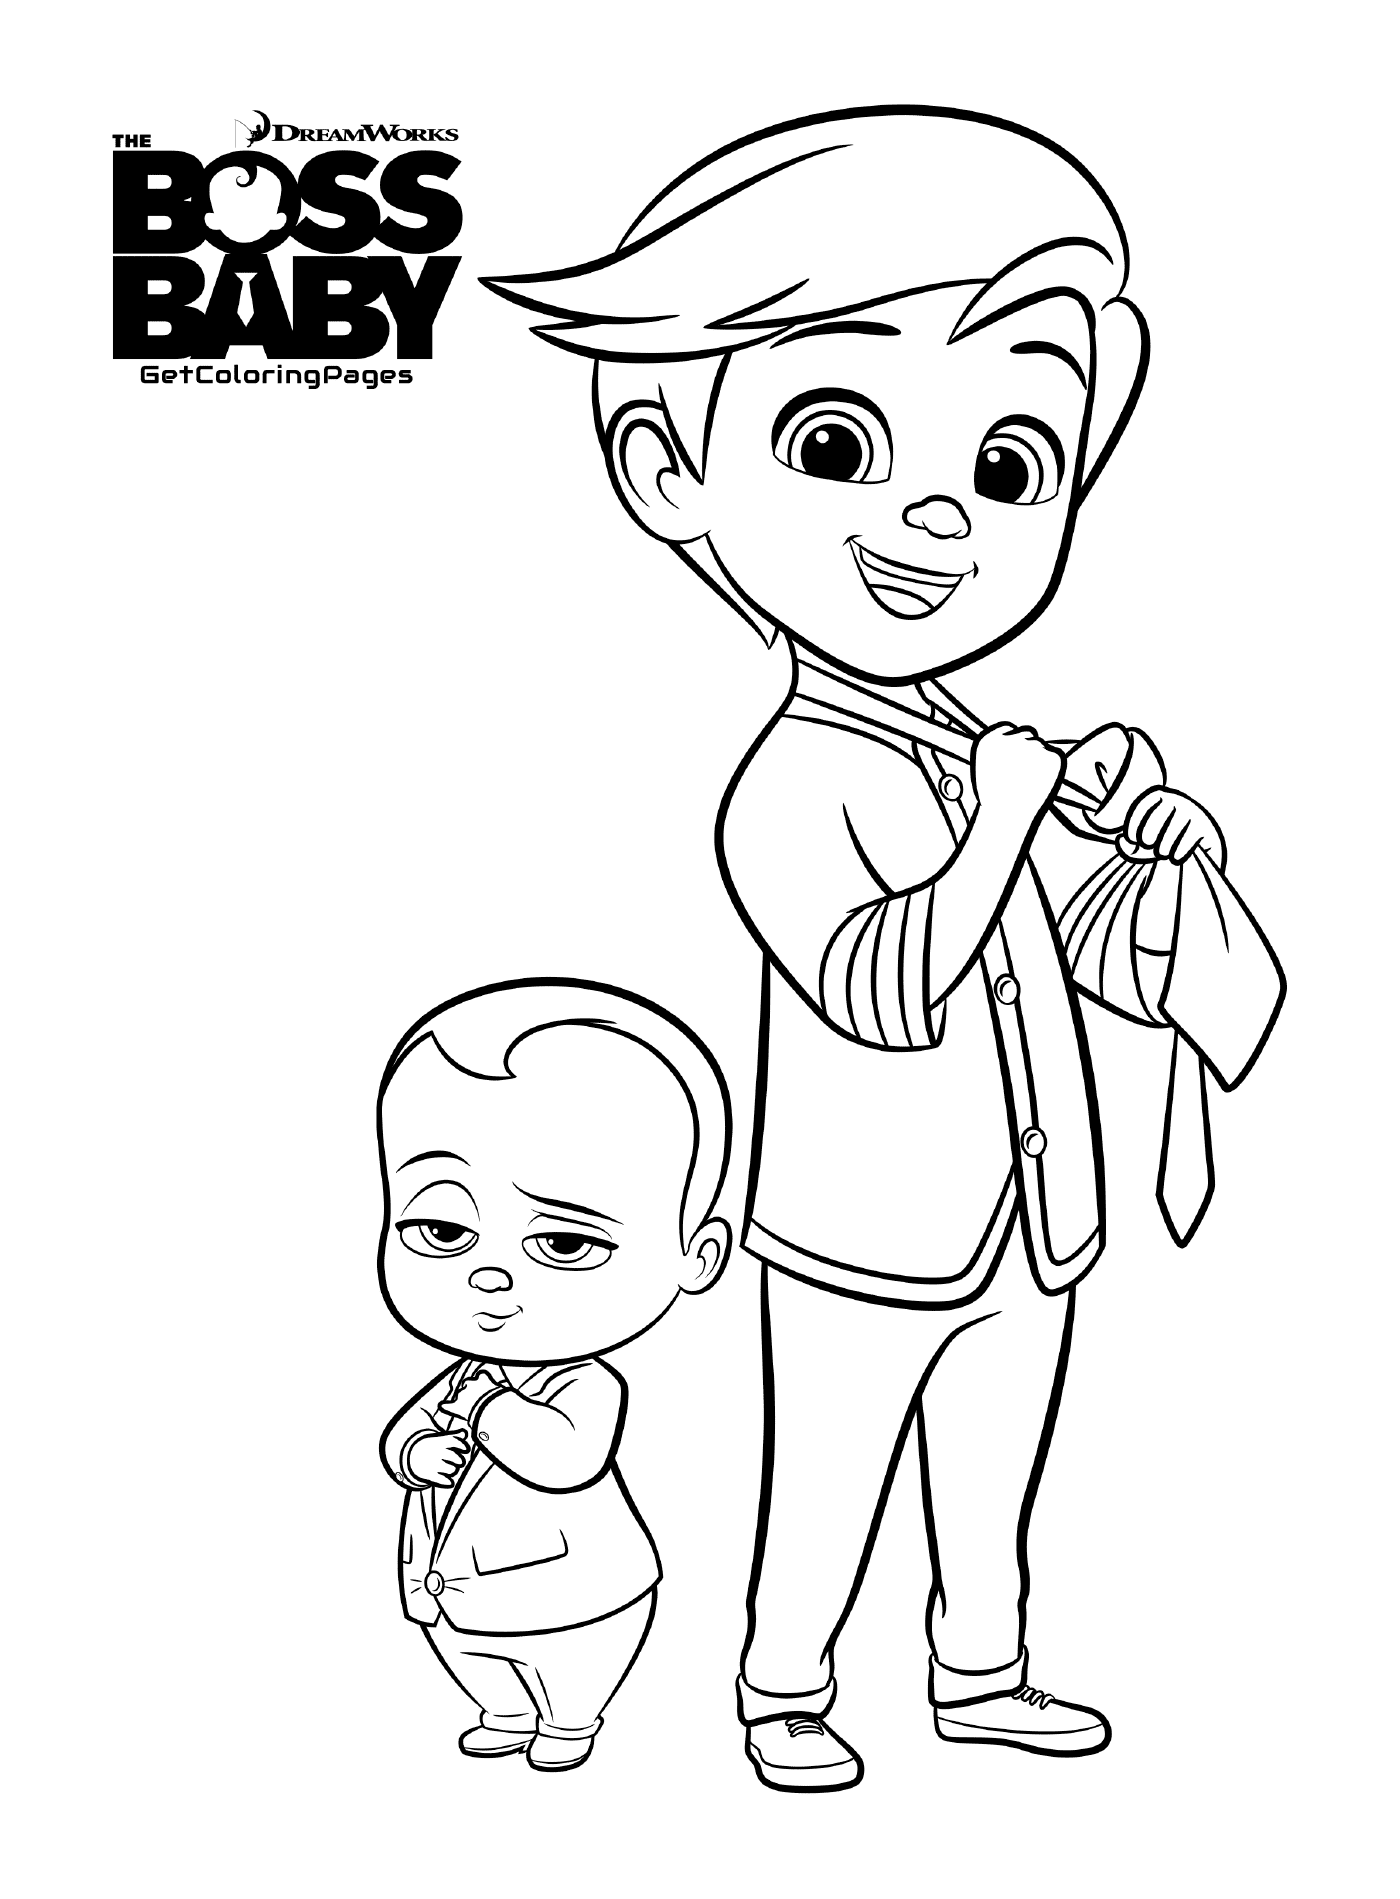   Une personne et un bébé 